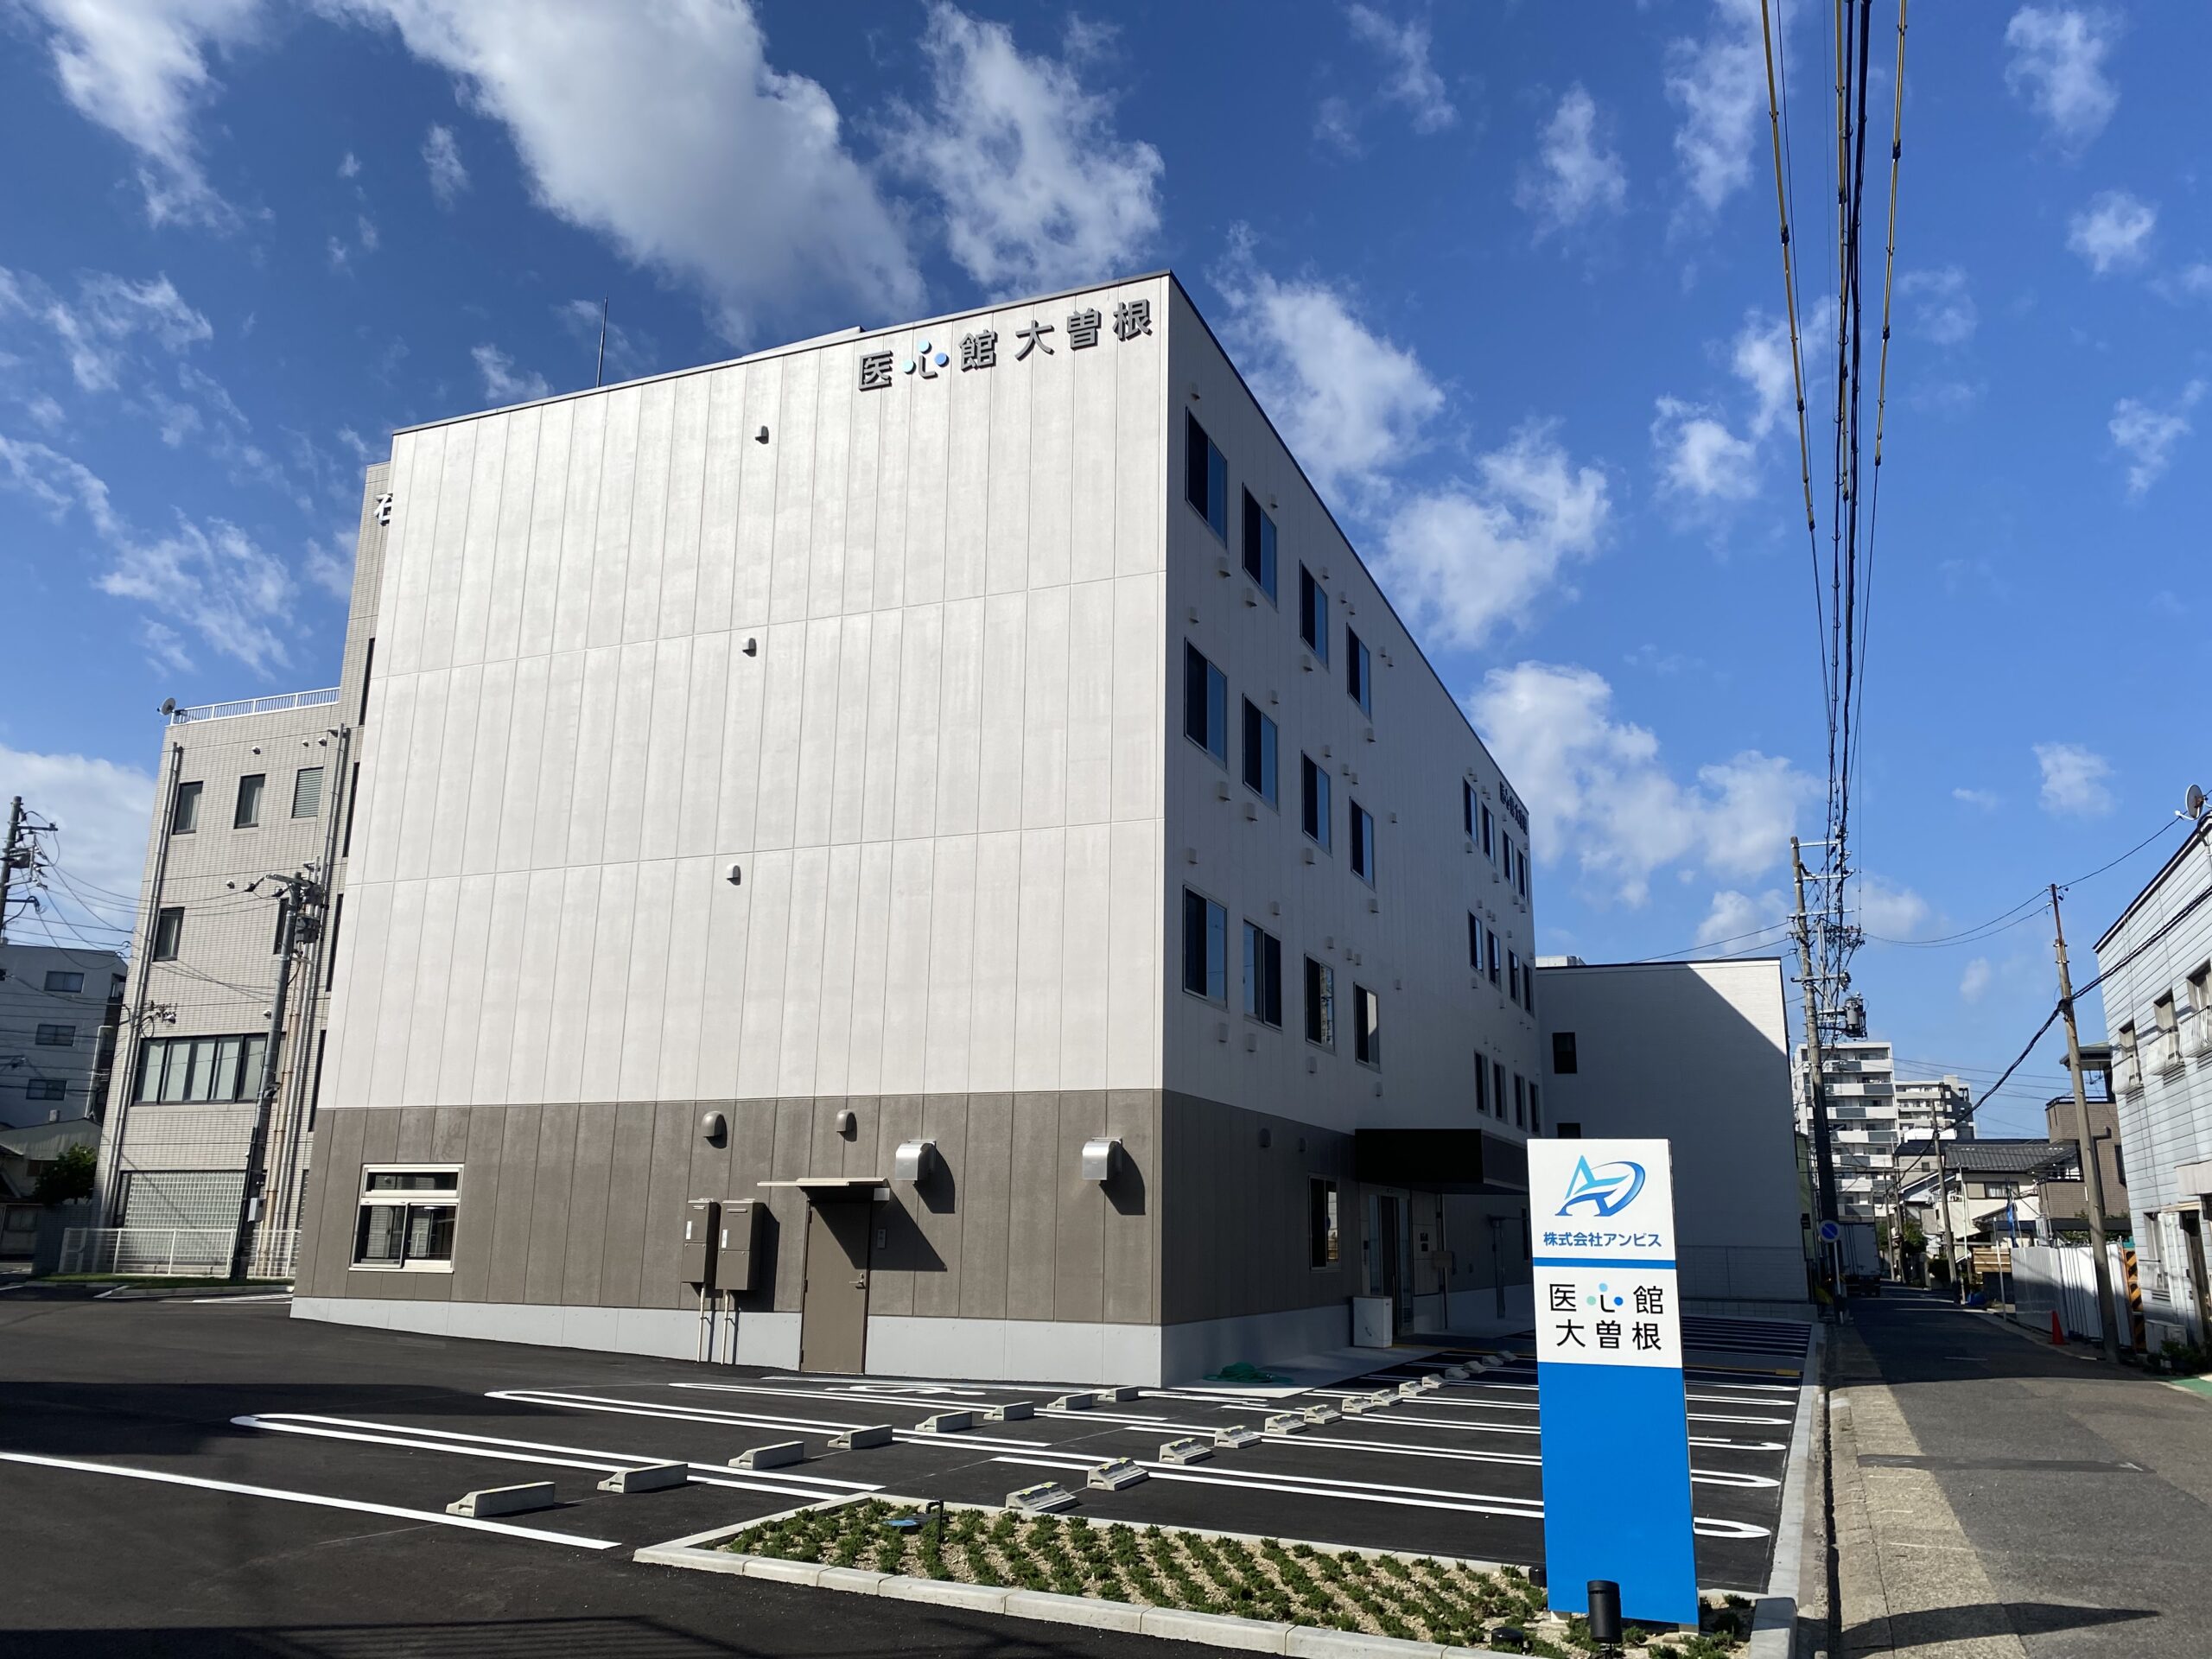 愛知県では５施設目となる 有料老人ホーム「医心館 大曽根」をオープンしました